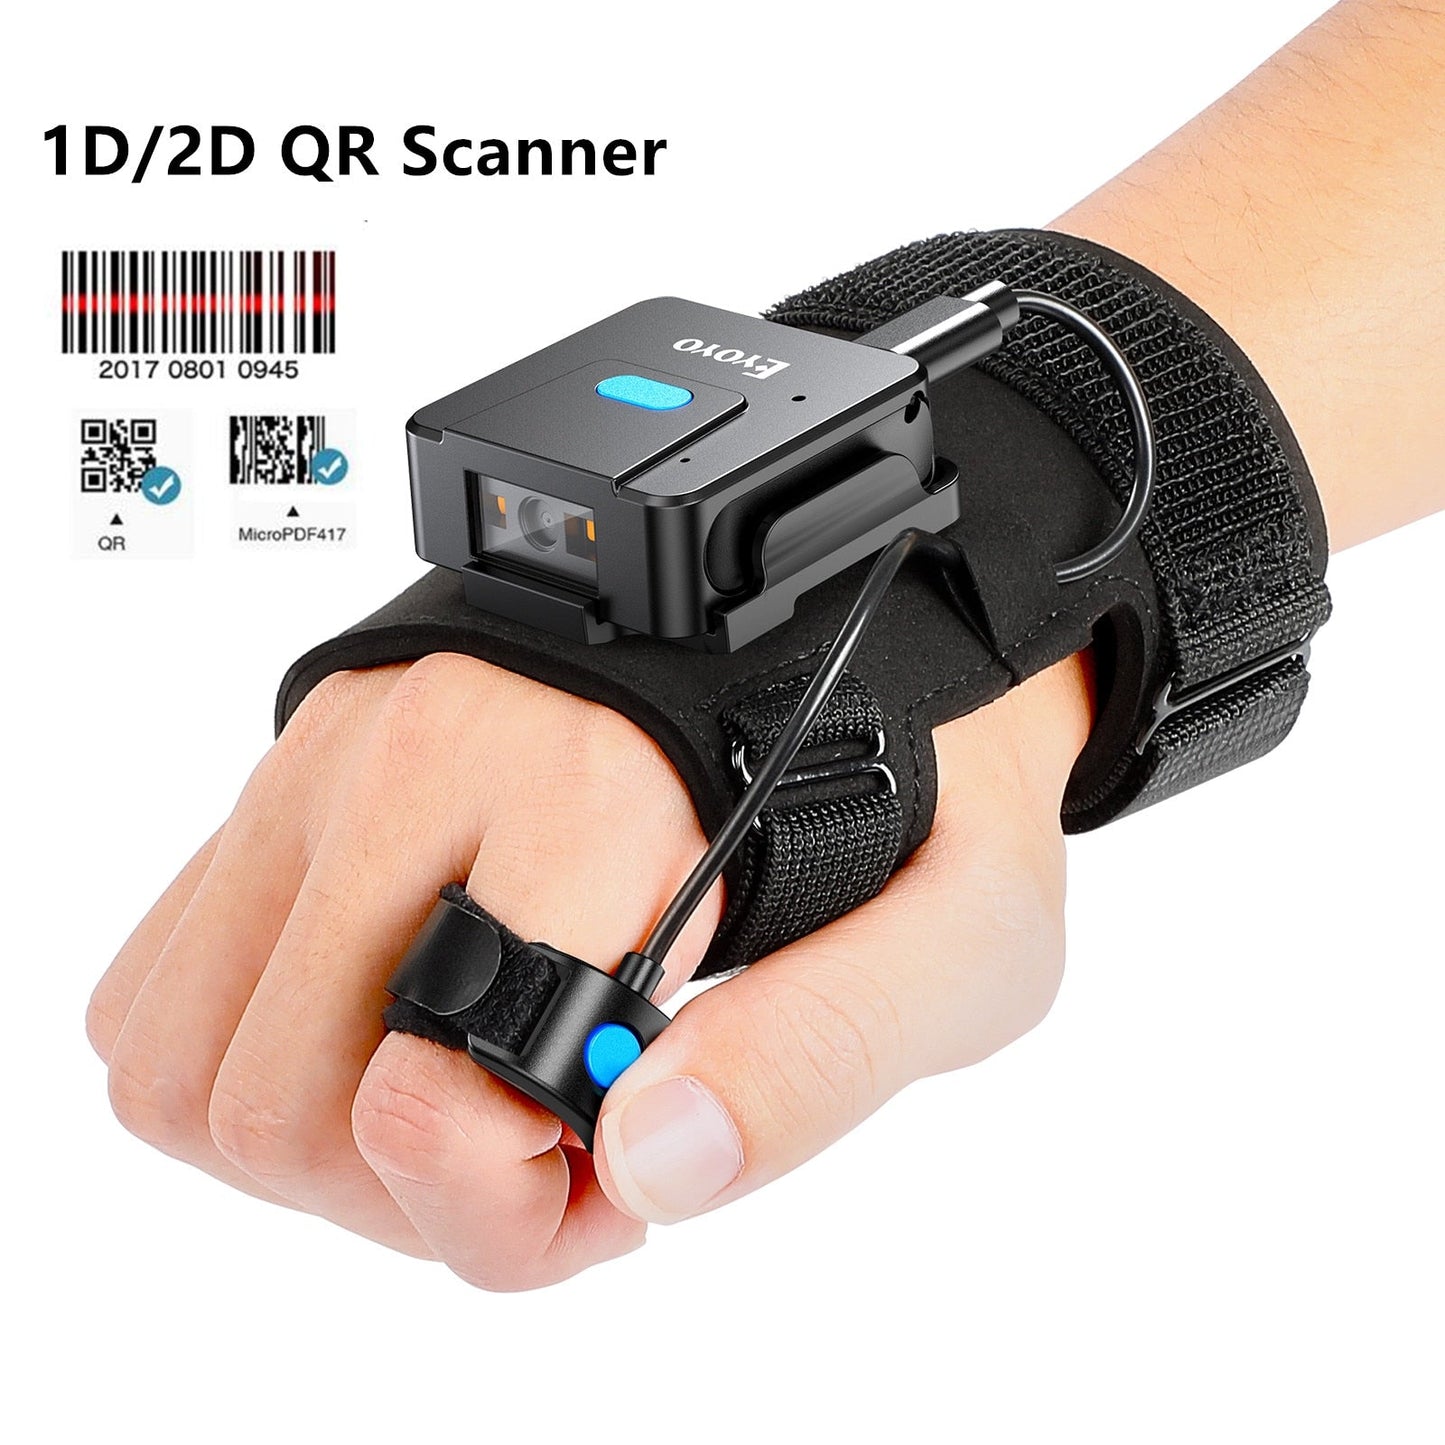 Eyoyo 2D Bluetooth barcode scanner draagbare handschoen - Linker en rechterhand - Draadloze barcodescanner - Bivakshop